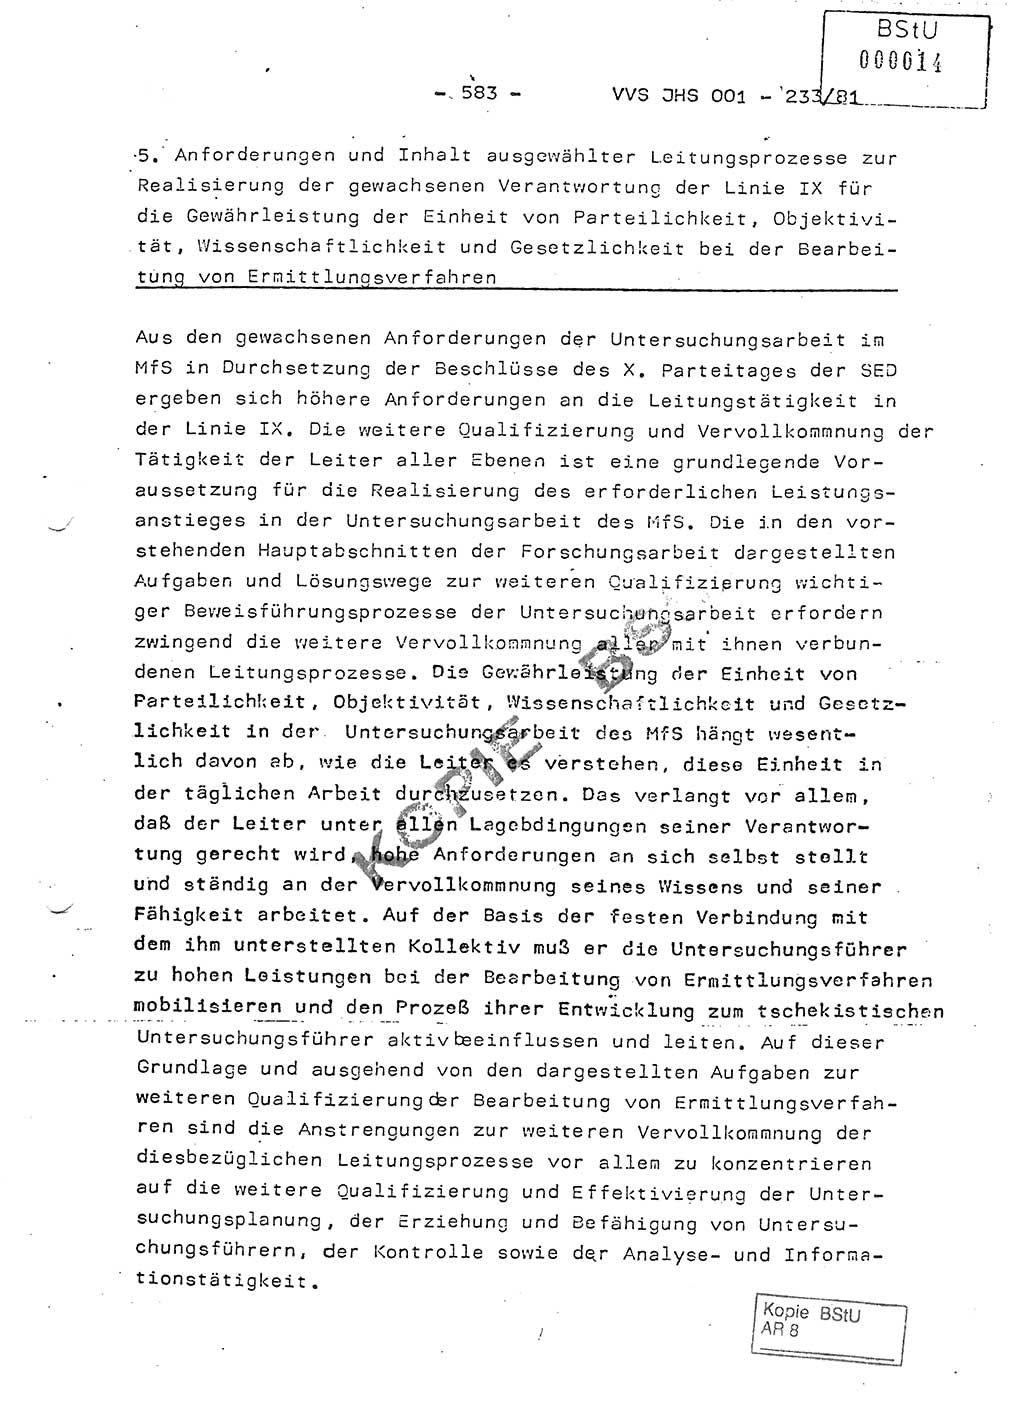 Dissertation Oberstleutnant Horst Zank (JHS), Oberstleutnant Dr. Karl-Heinz Knoblauch (JHS), Oberstleutnant Gustav-Adolf Kowalewski (HA Ⅸ), Oberstleutnant Wolfgang Plötner (HA Ⅸ), Ministerium für Staatssicherheit (MfS) [Deutsche Demokratische Republik (DDR)], Juristische Hochschule (JHS), Vertrauliche Verschlußsache (VVS) o001-233/81, Potsdam 1981, Blatt 583 (Diss. MfS DDR JHS VVS o001-233/81 1981, Bl. 583)